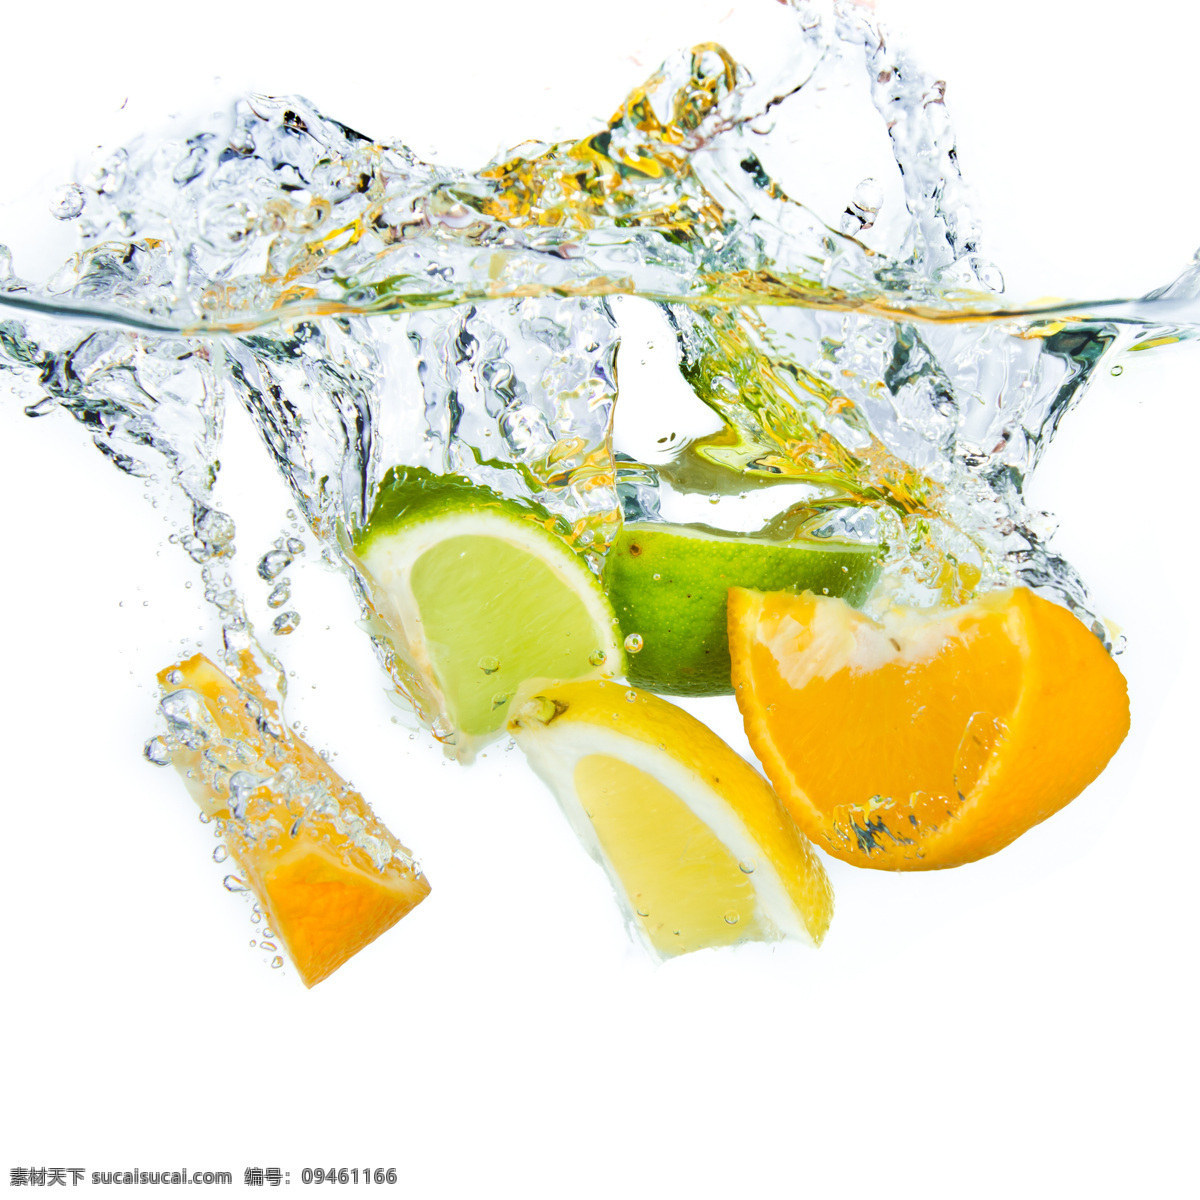 掉 入 水中 柠檬 橙子 水里 水果 水花喷溅 动感水花 飞溅的水花 新鲜水果 果实 蔬菜图片 餐饮美食